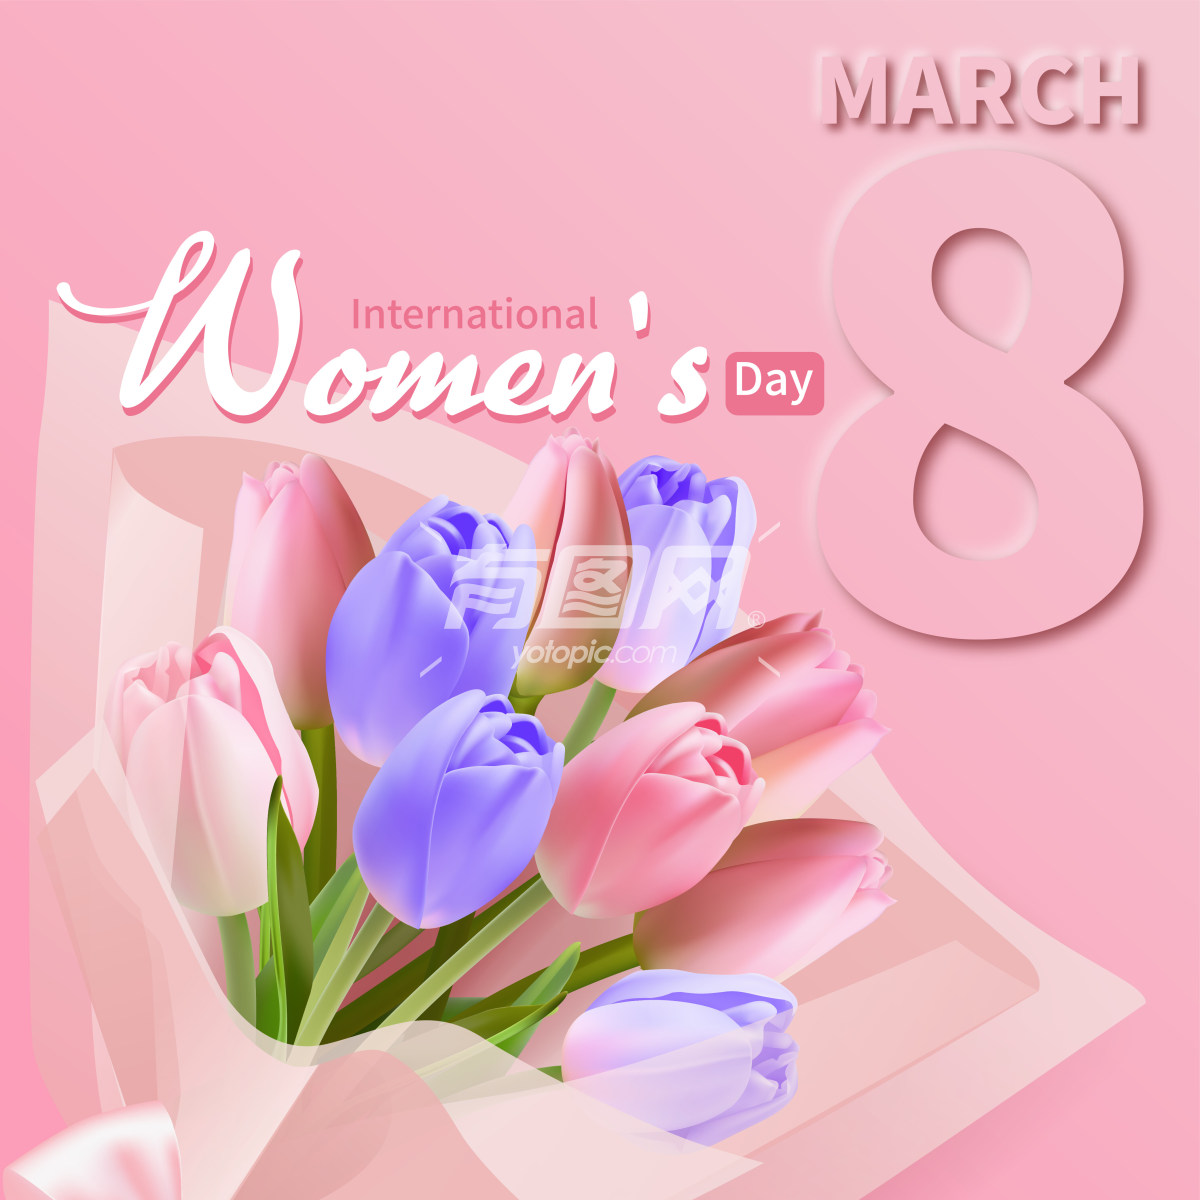 国际妇女节的宣传海报